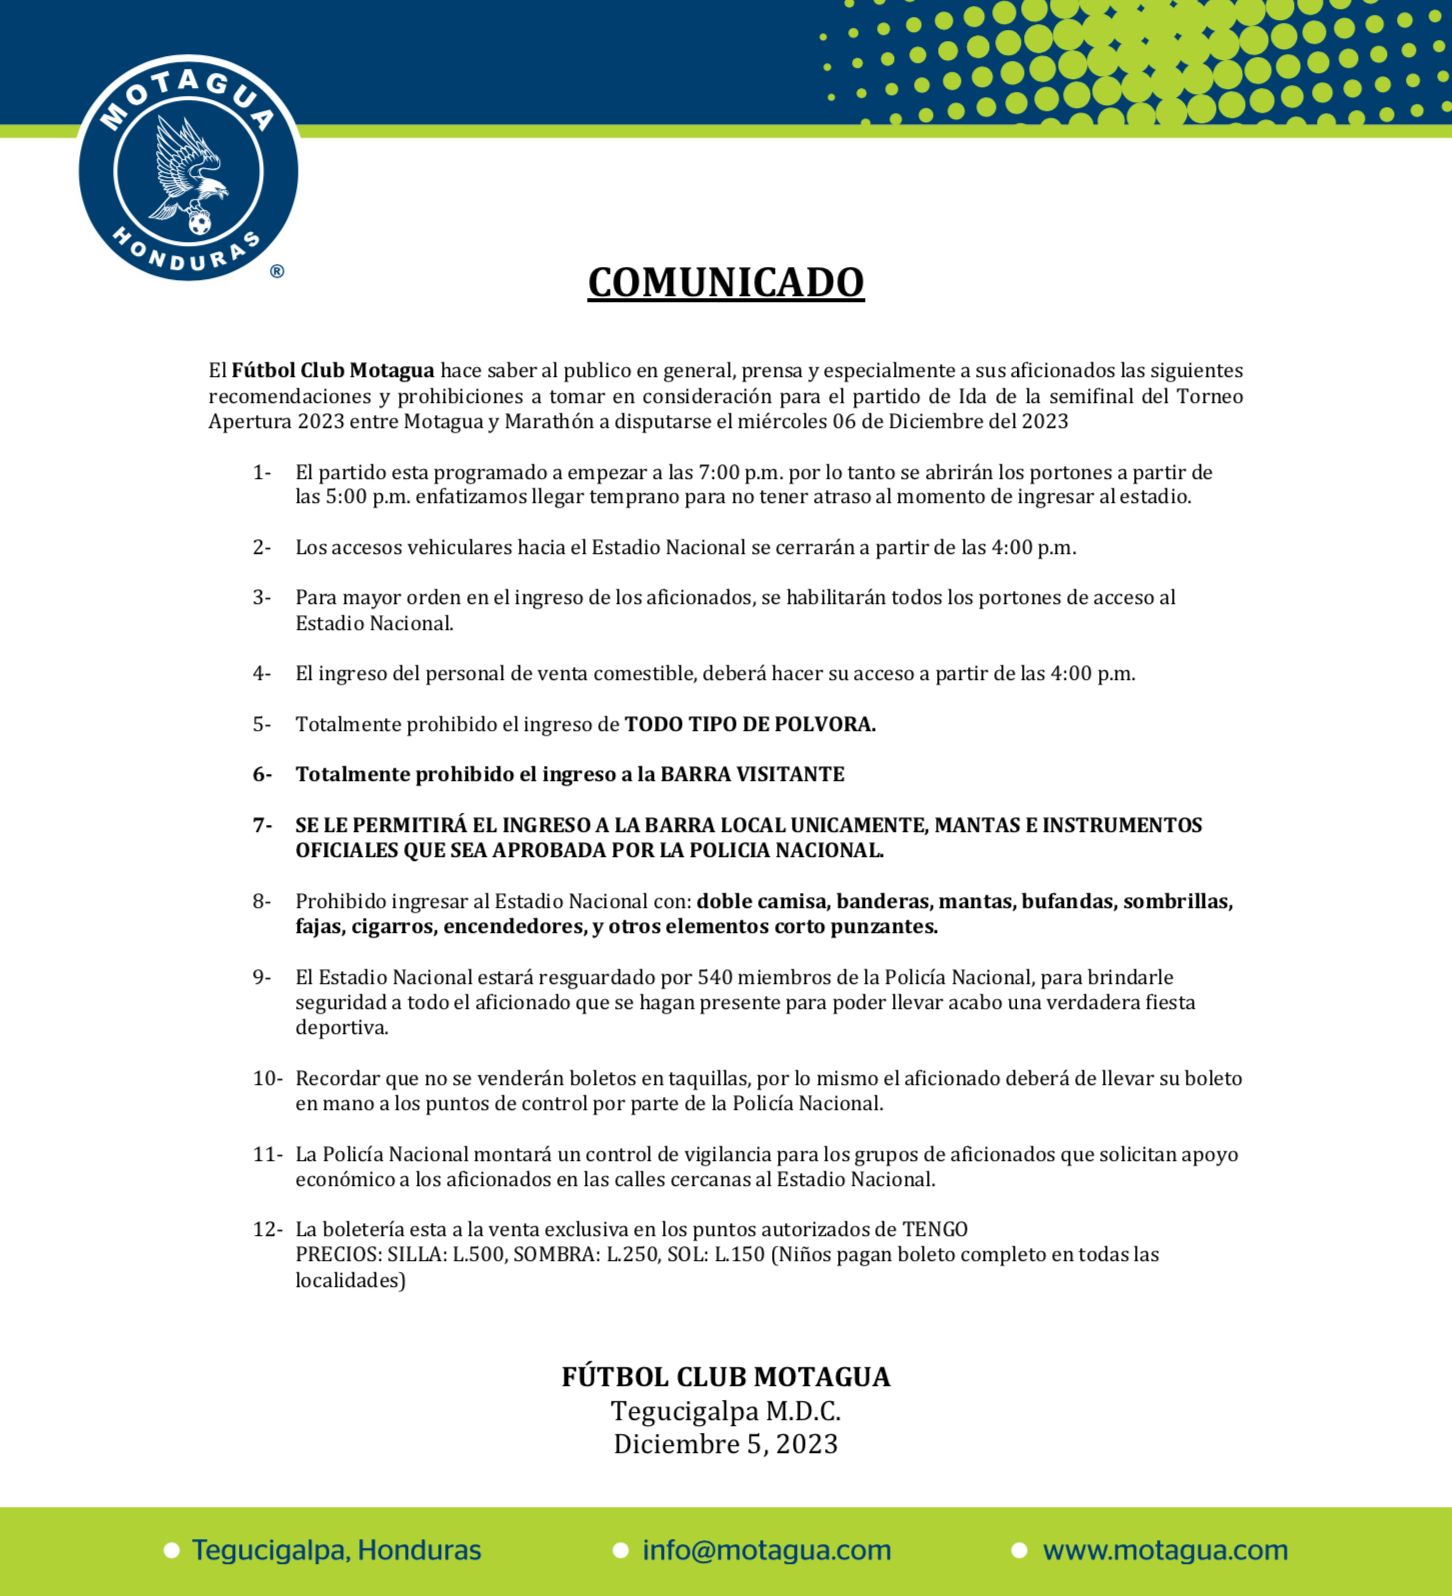 Estas son las restricciones aprobadas para el partido de ida entre Motagua y Marathón.